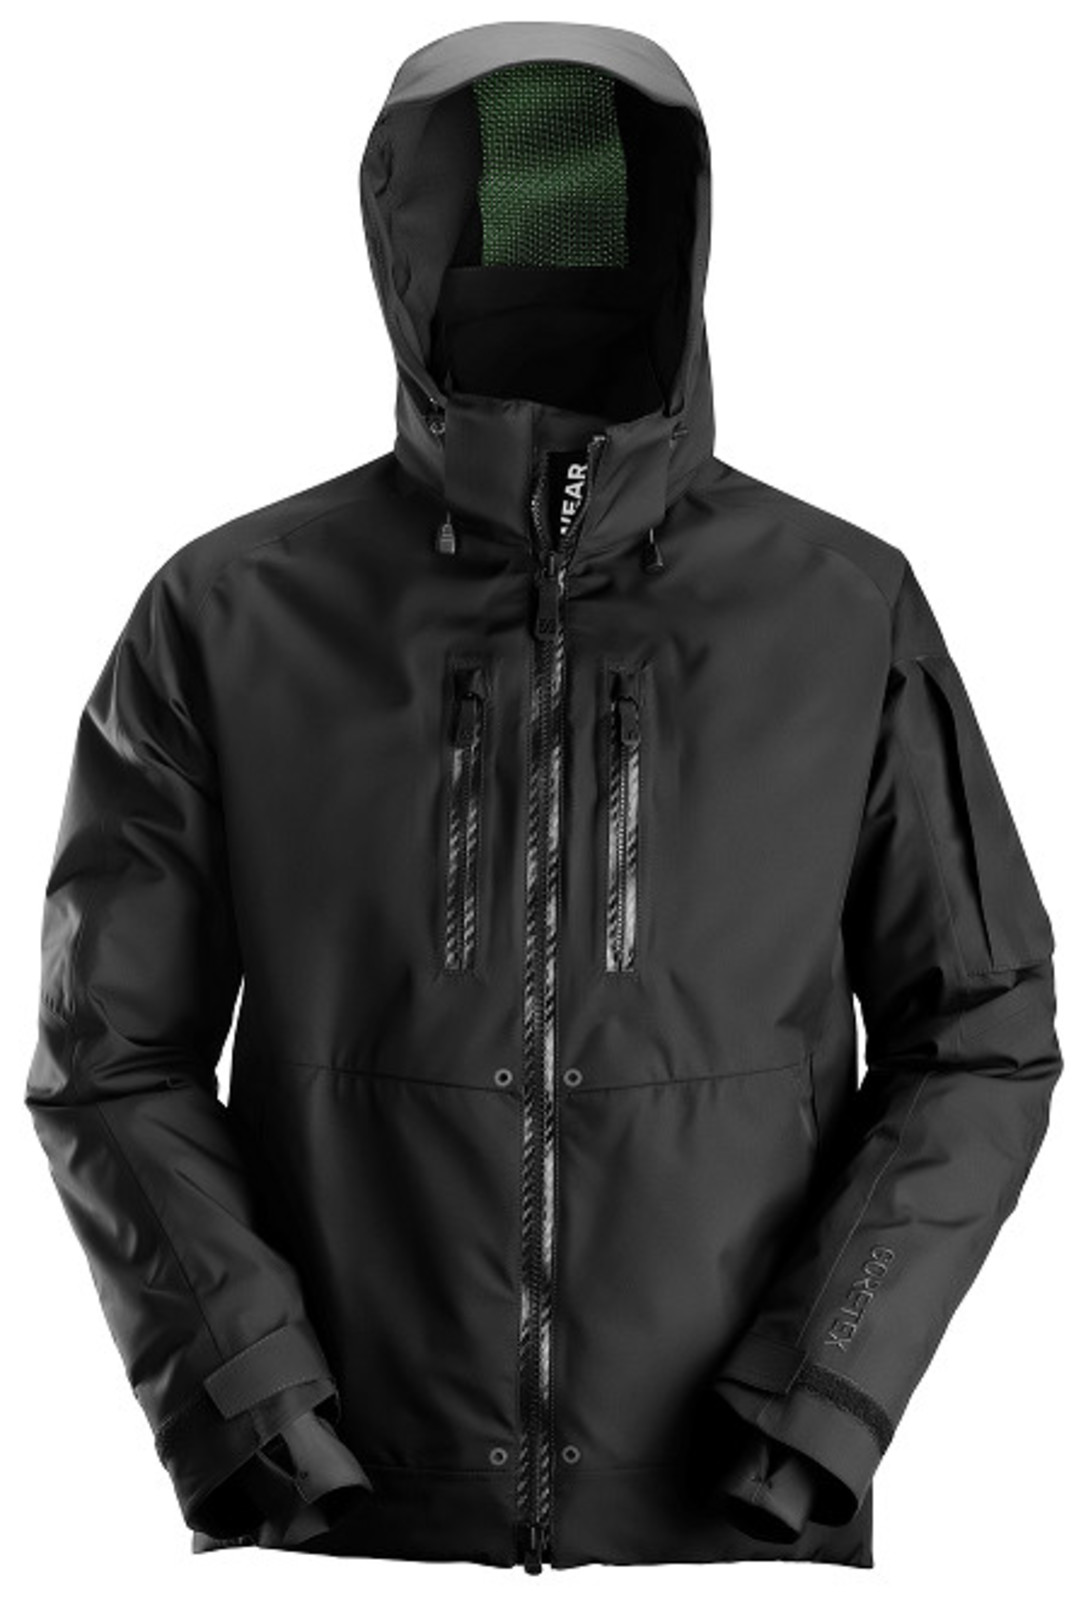 Nepremokavá zimná bunda Snickers® FlexiWork GORE-TEX®  - veľkosť: XL, farba: čierna